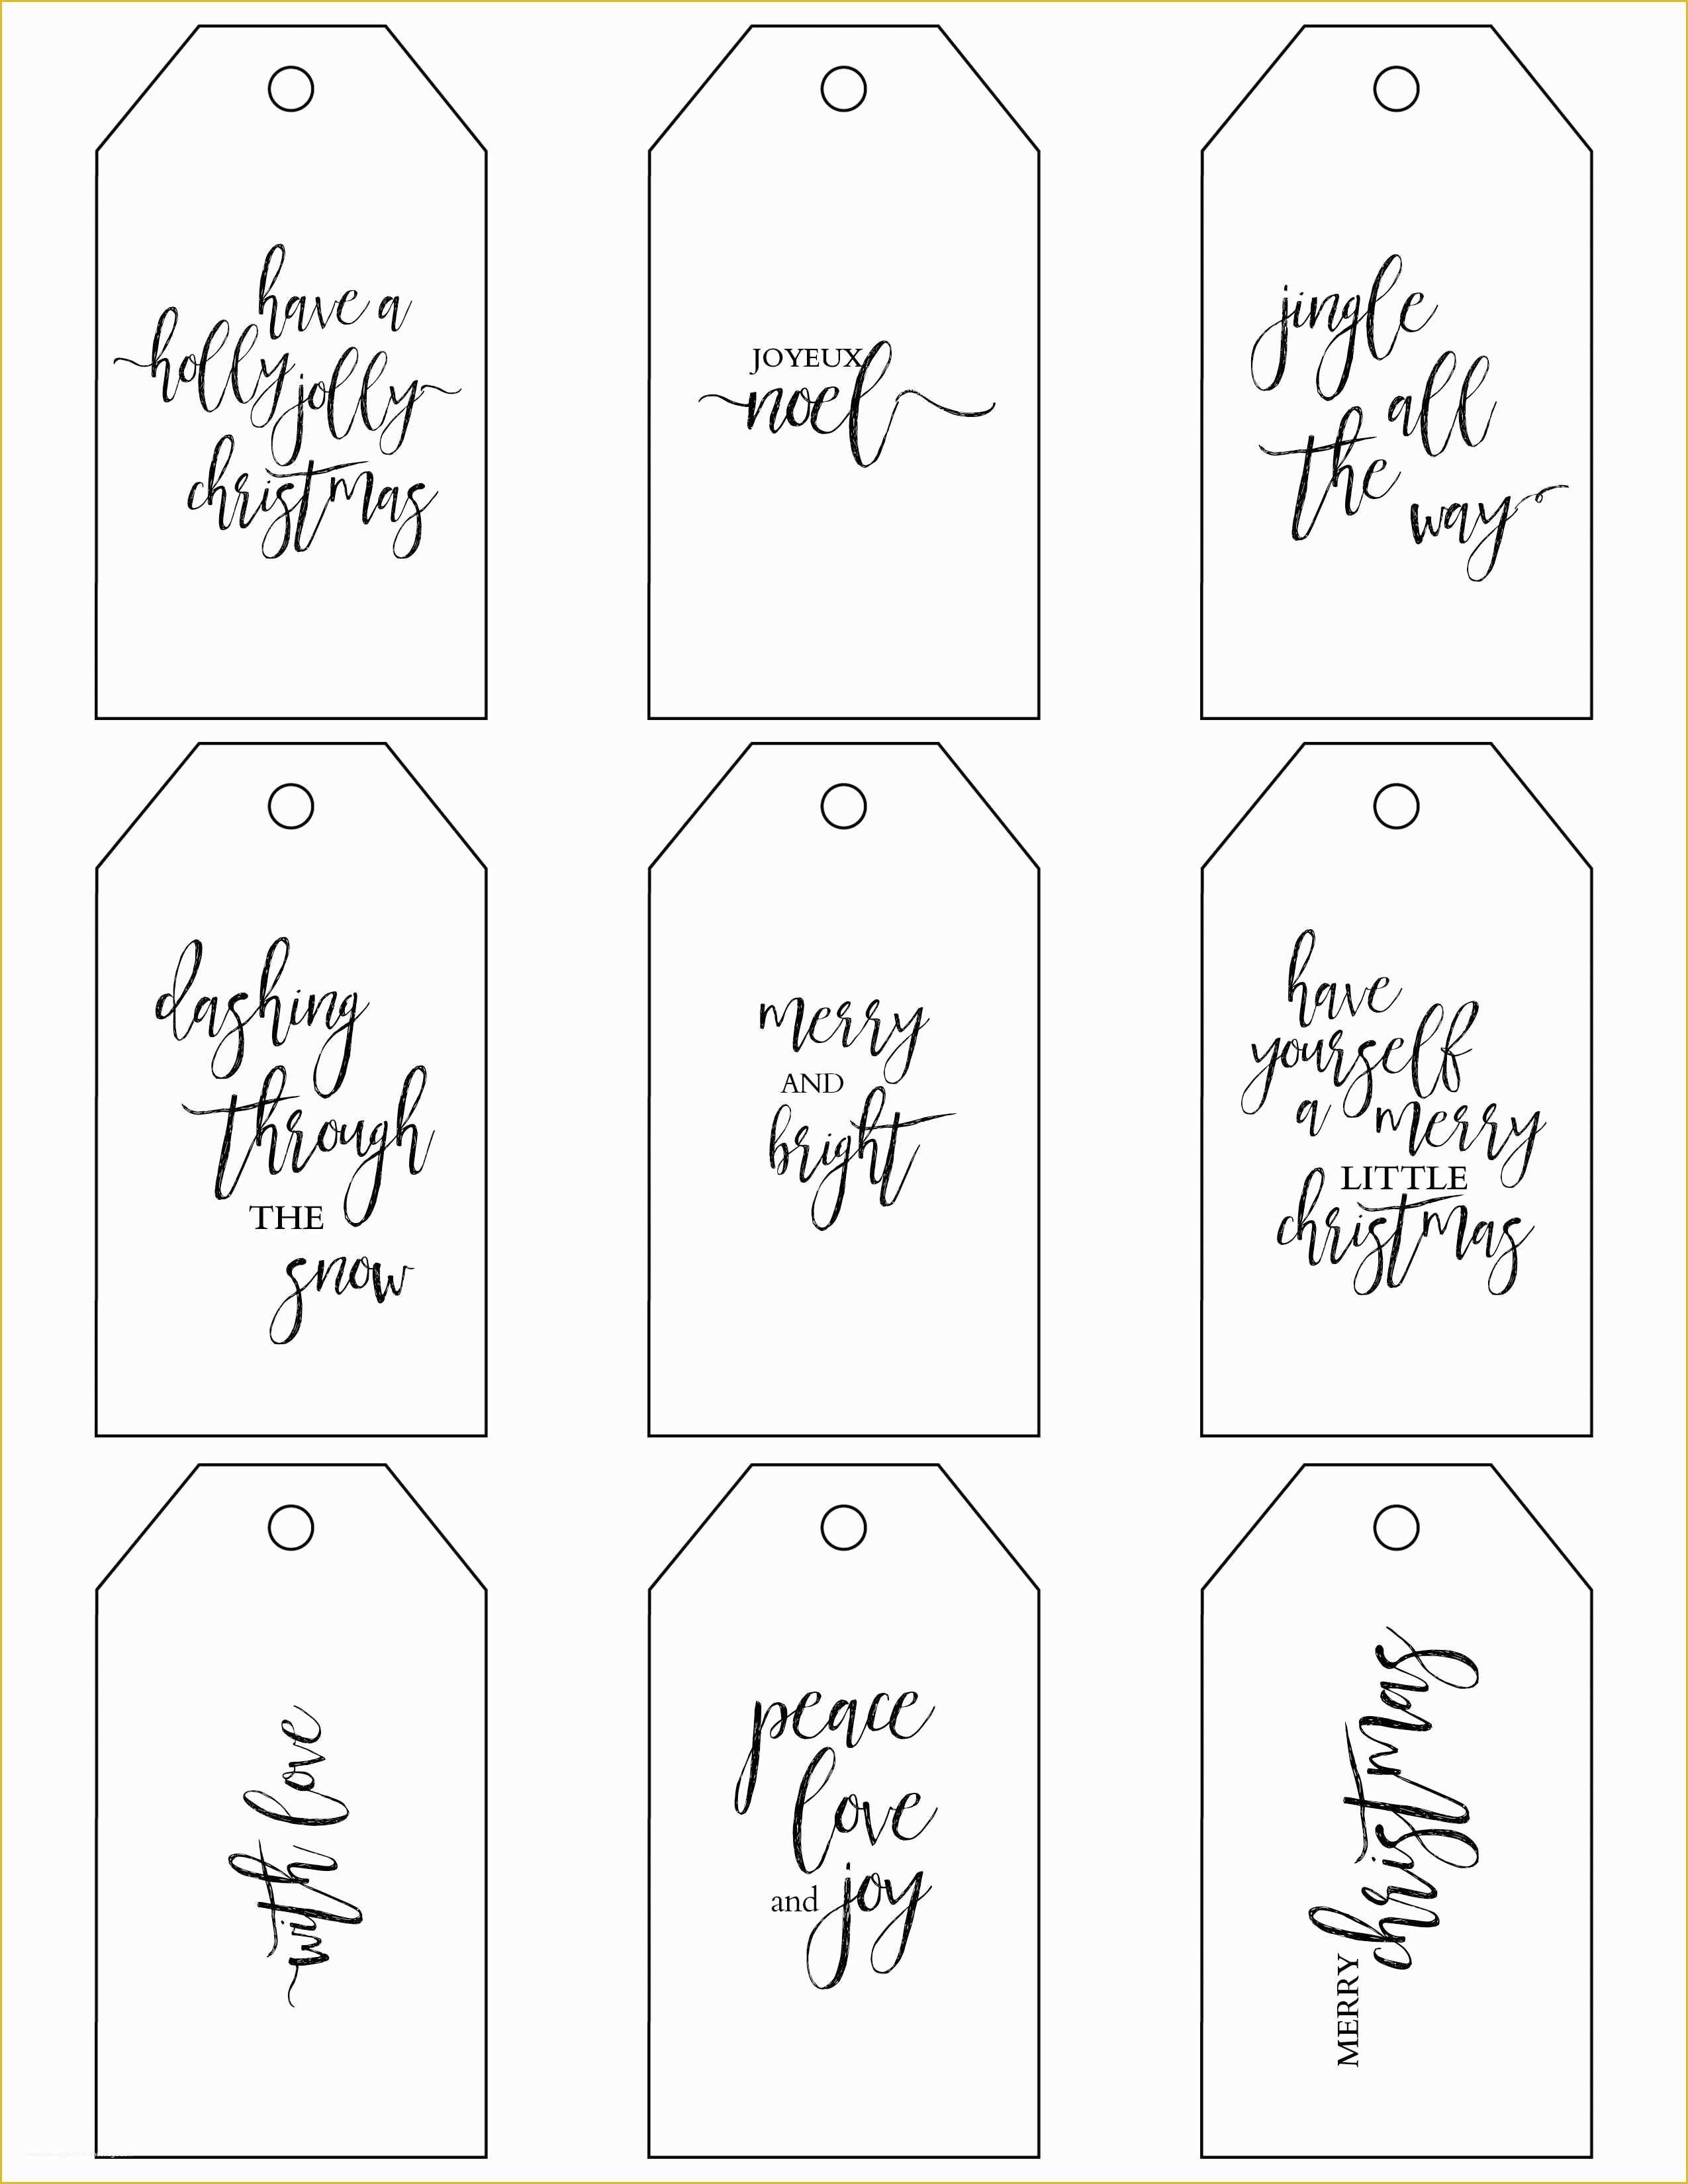 Free Printable Gift Tags Templates Of Printable Christmas Gift Tags Make Holiday Wrapping Simple 